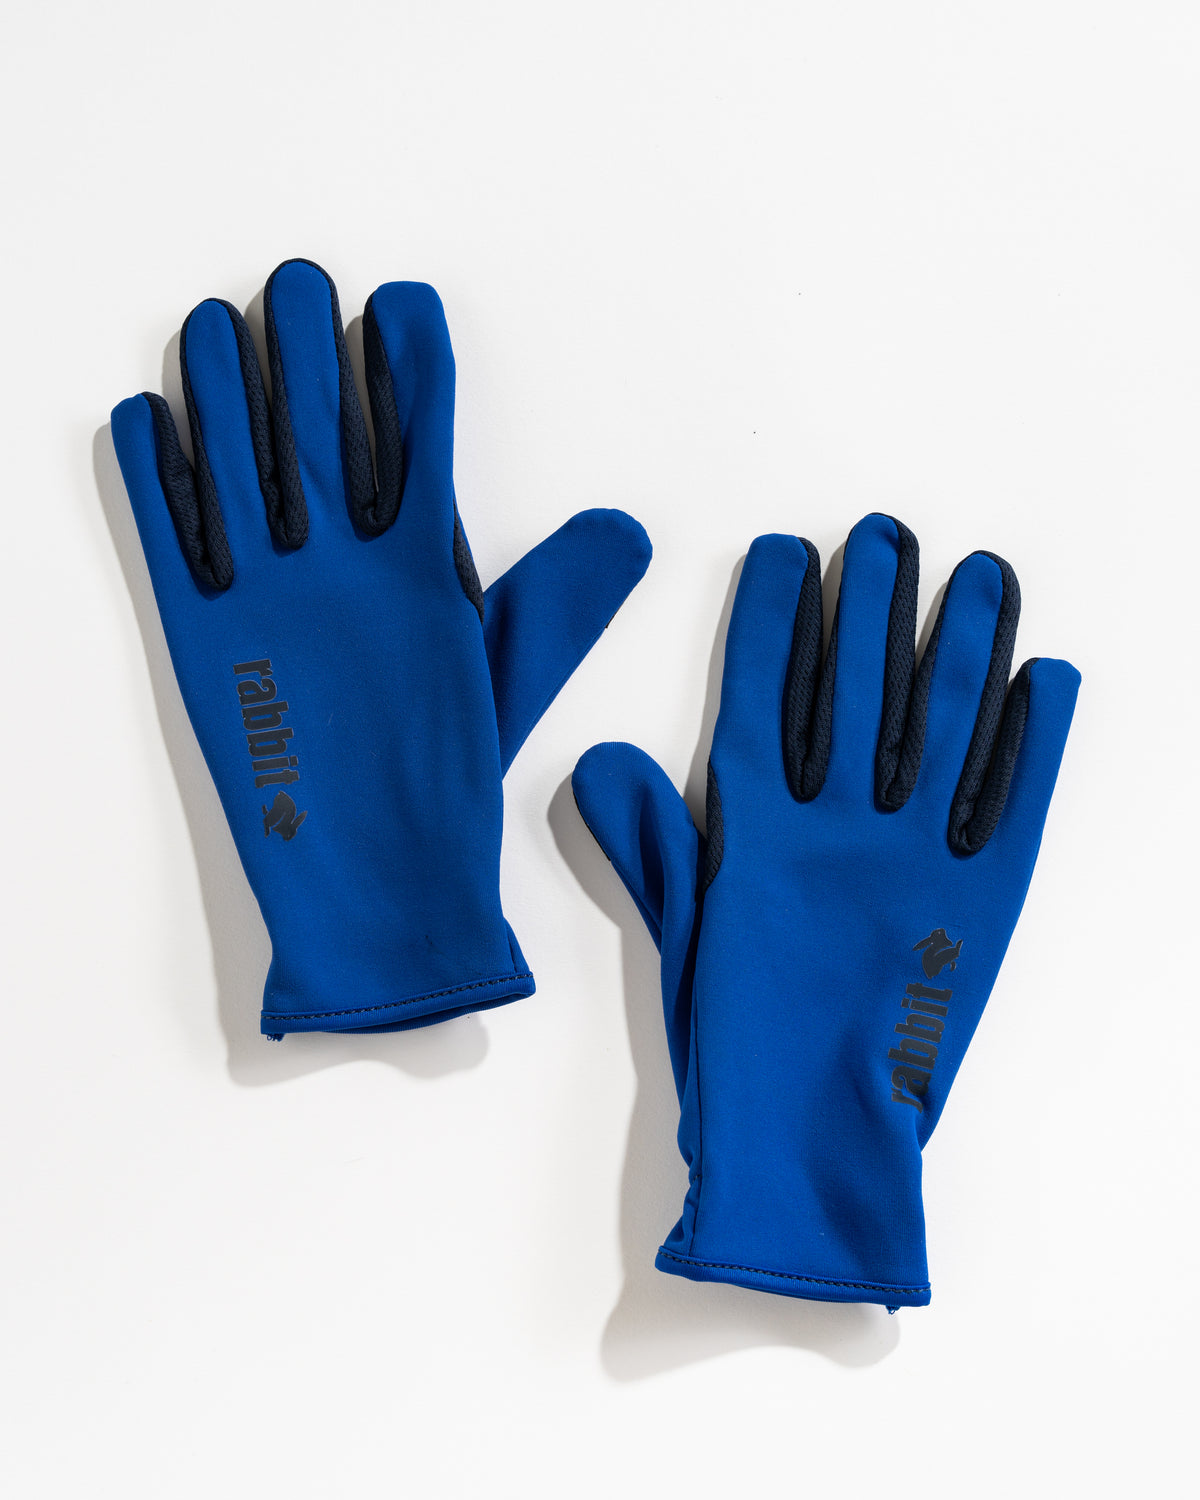 Tech Gloves